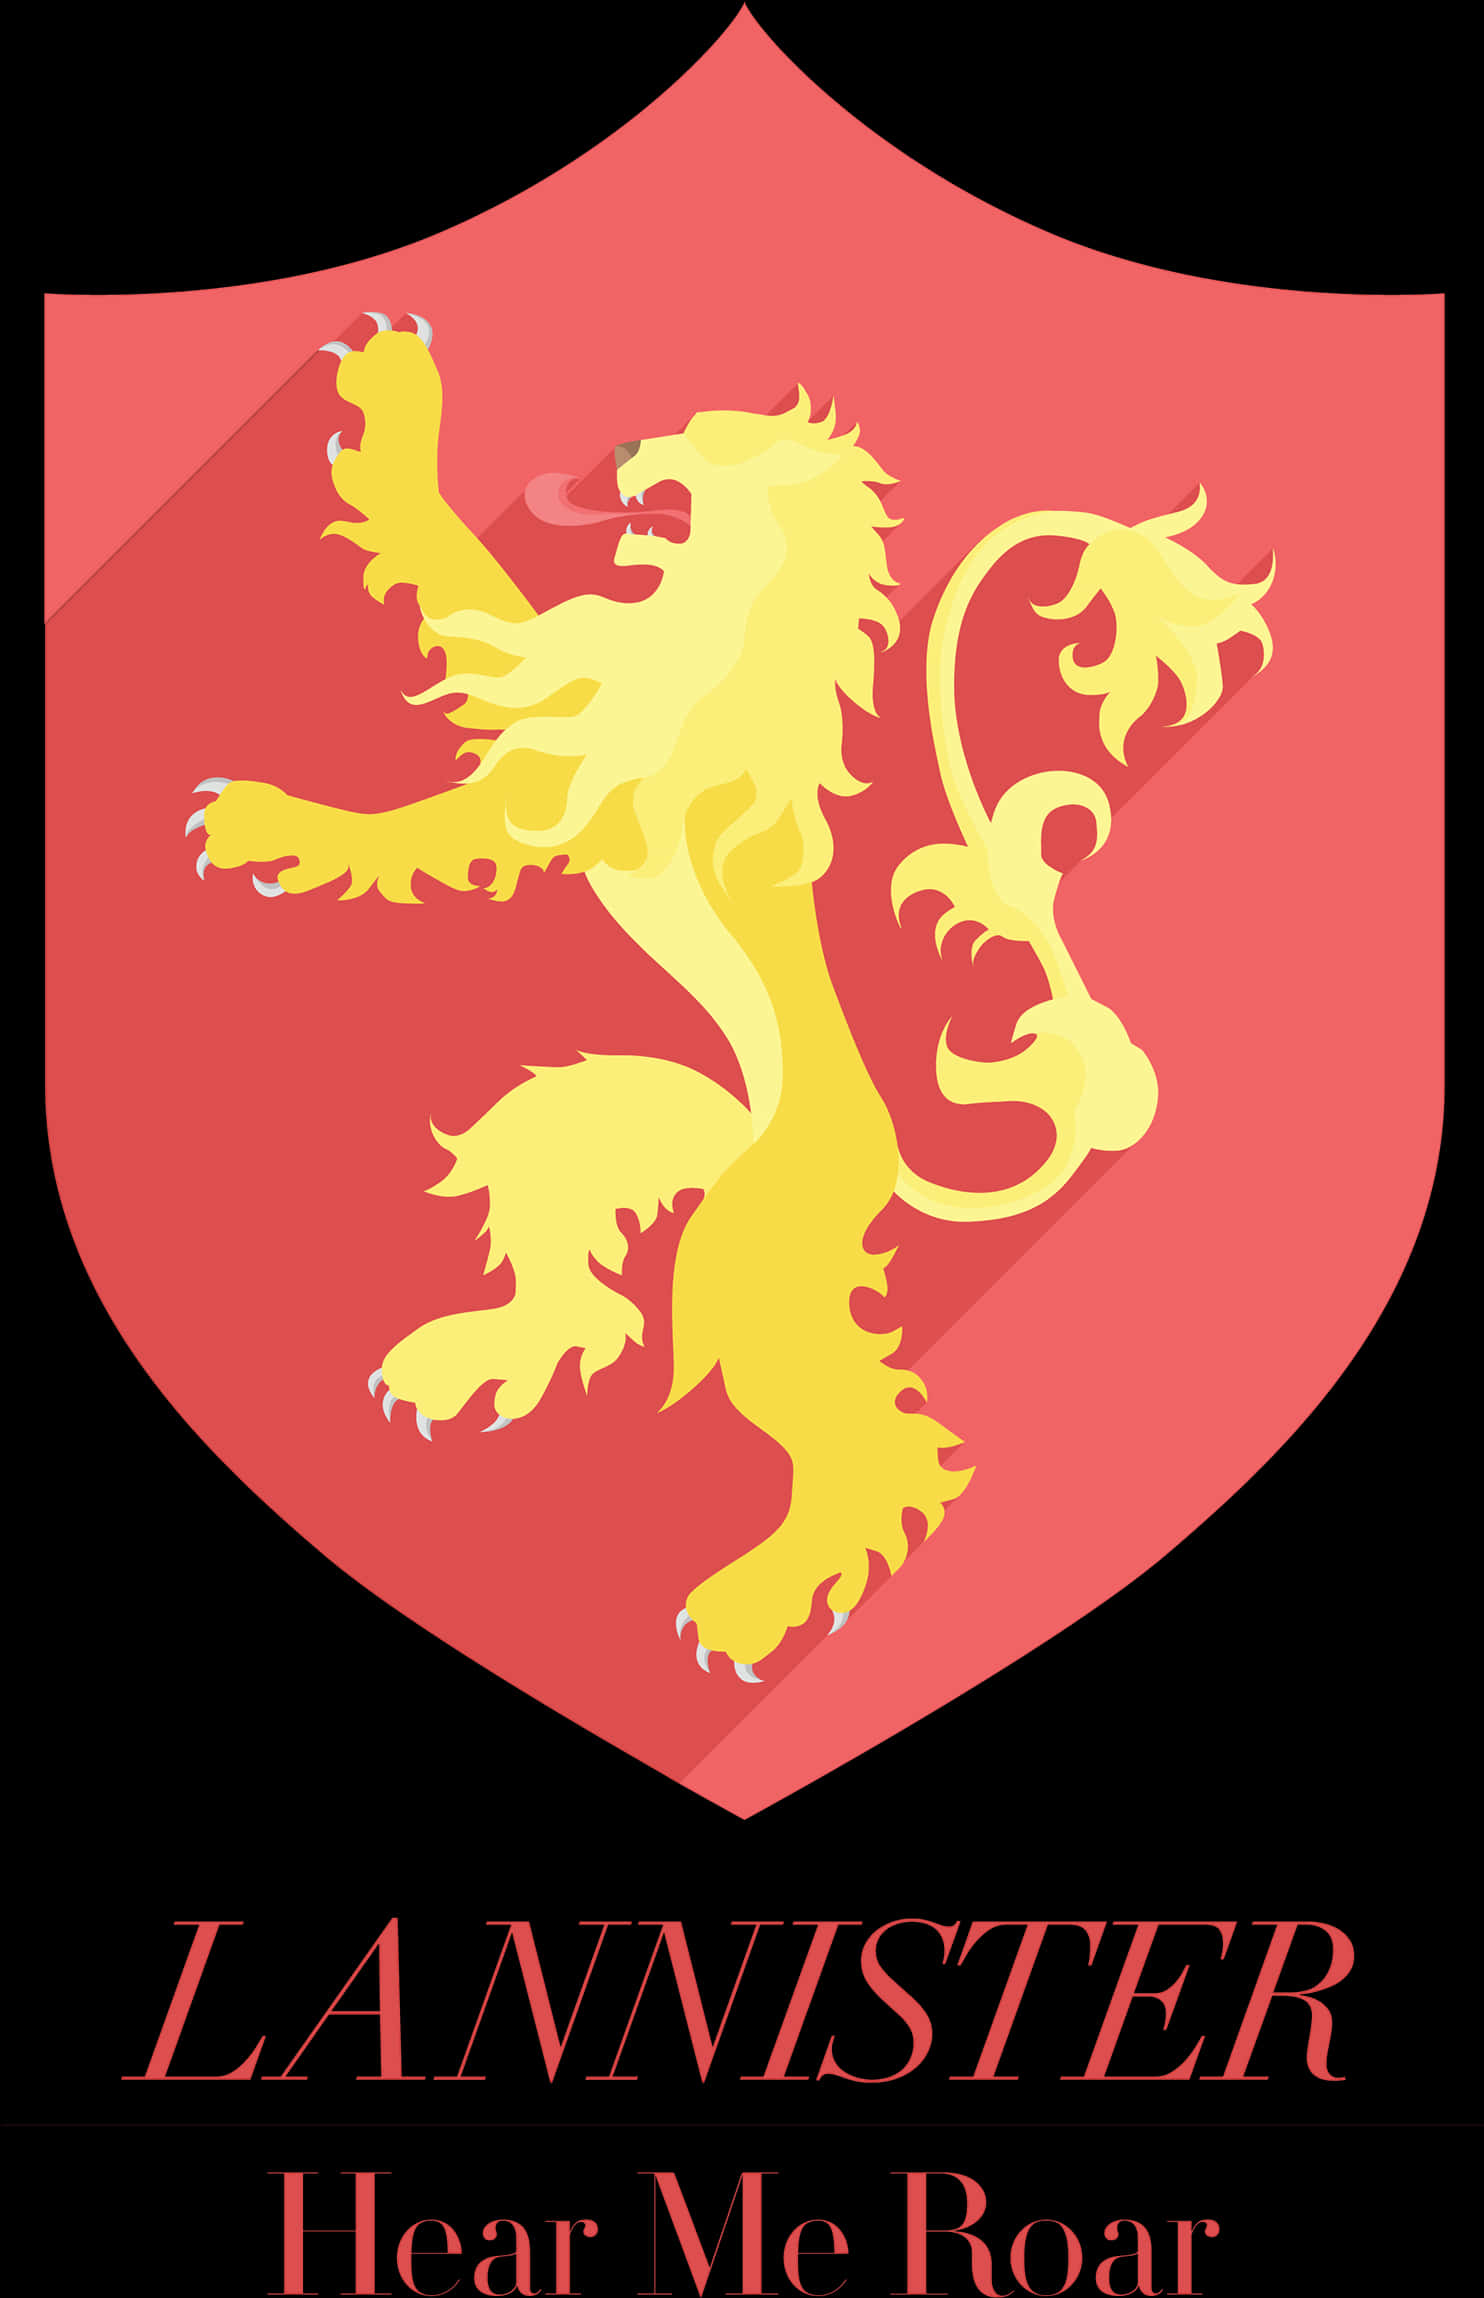 Lannister House Crest